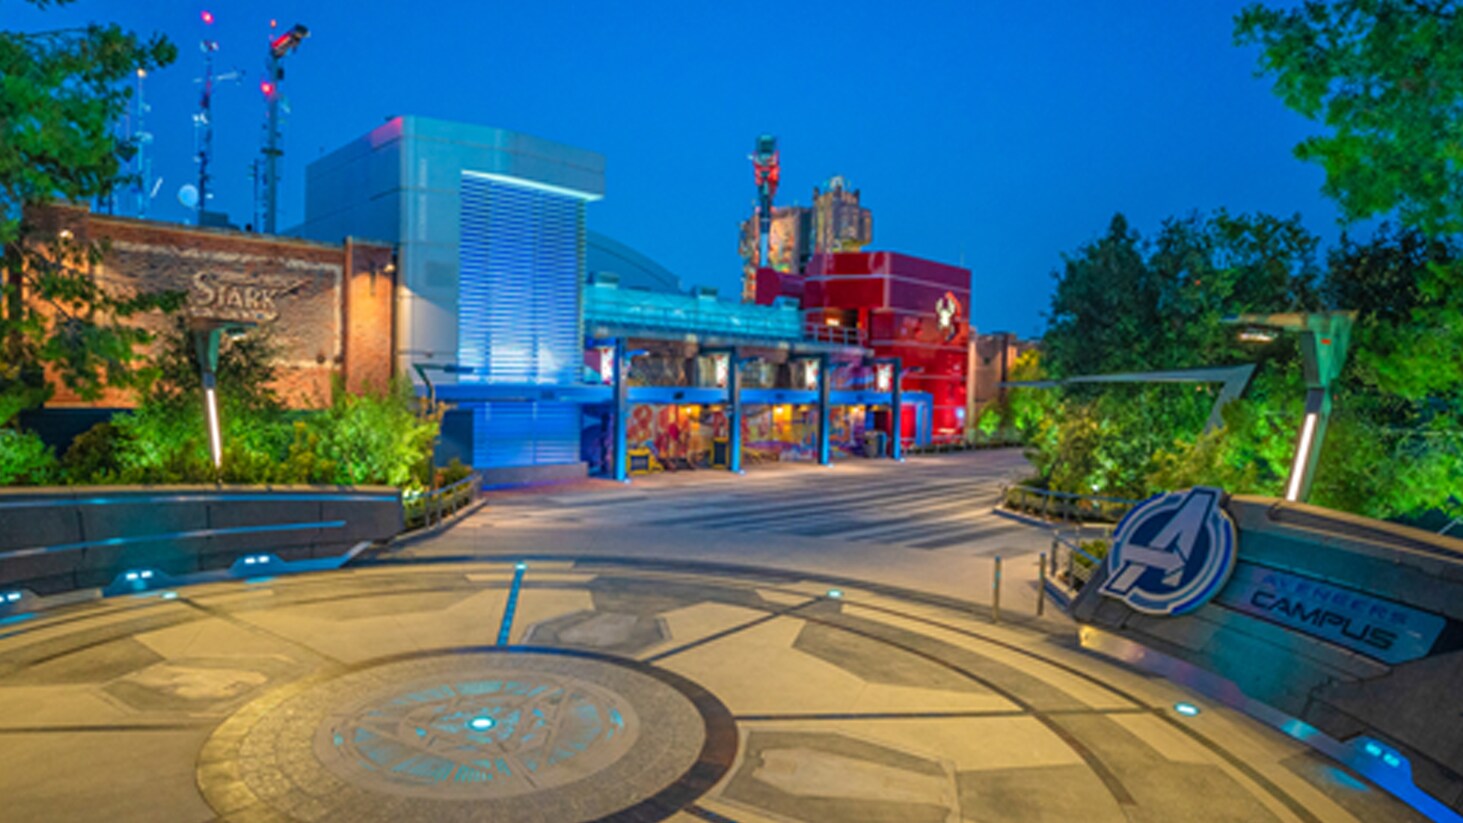 Disneyland Resort abrirá um espaço completamente novo, o Avengers Campus, que dá as boas-vindas aos recrutas de super-heróis a partir de 4 de junho de 2021